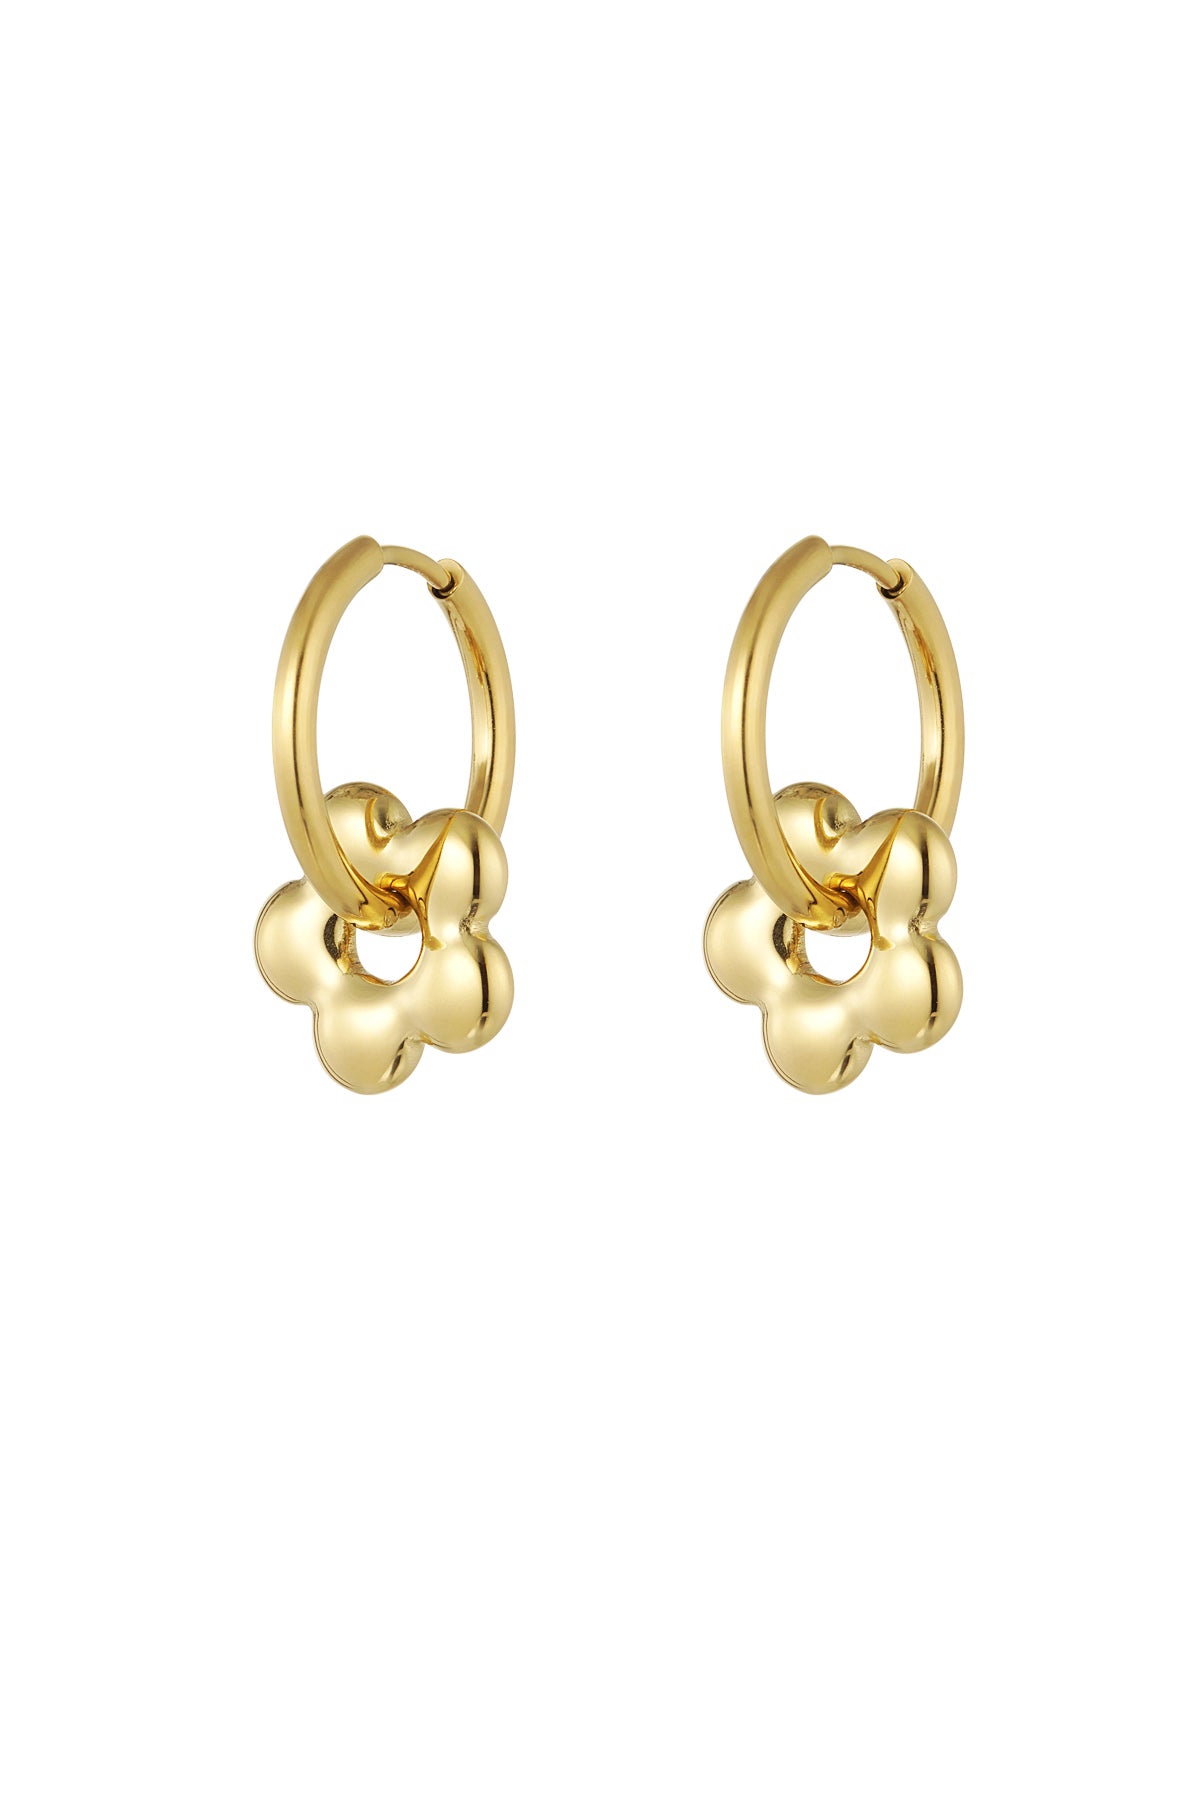 The Edit - Gold Flower Charm Hoop Earrings